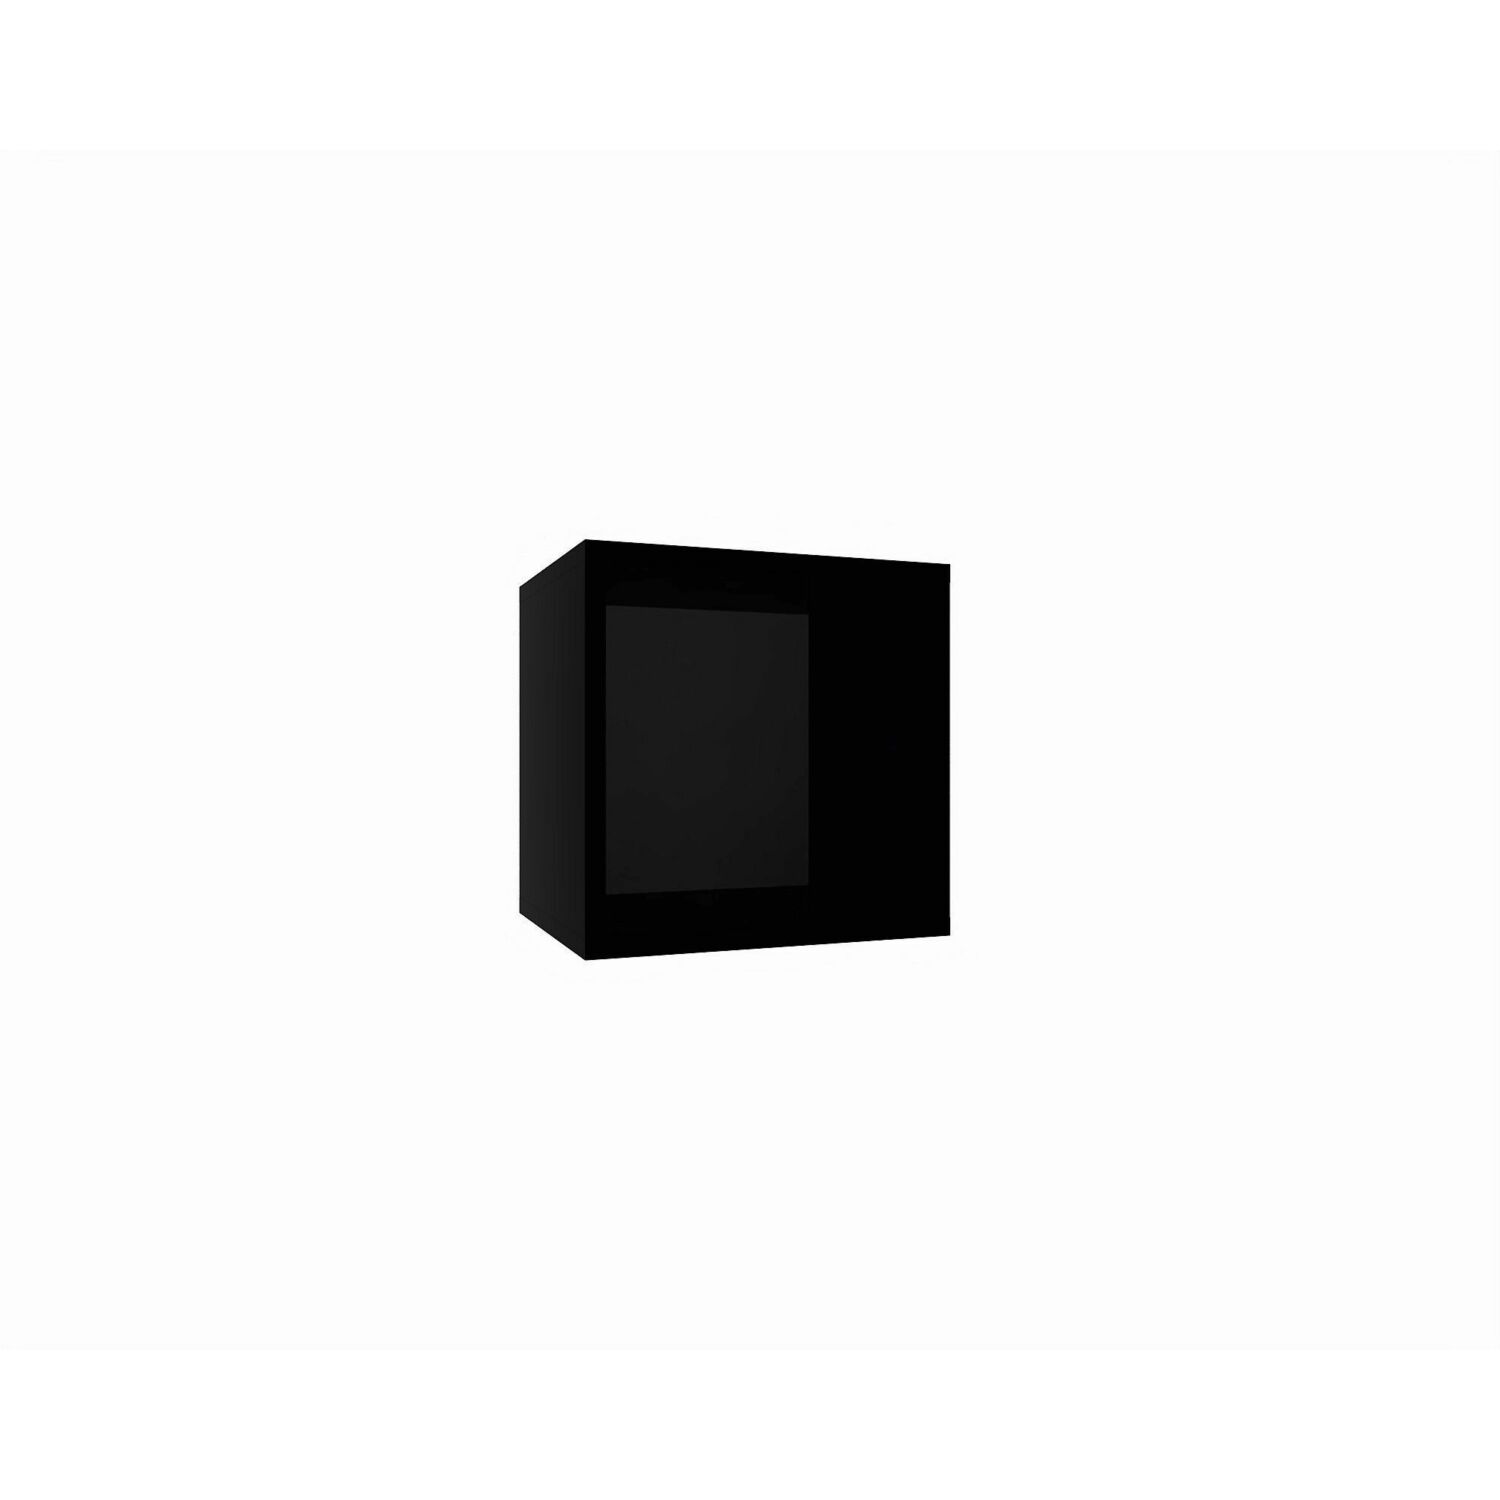 IZUMI 10 BL fekete nyitott fali polc 35 cm